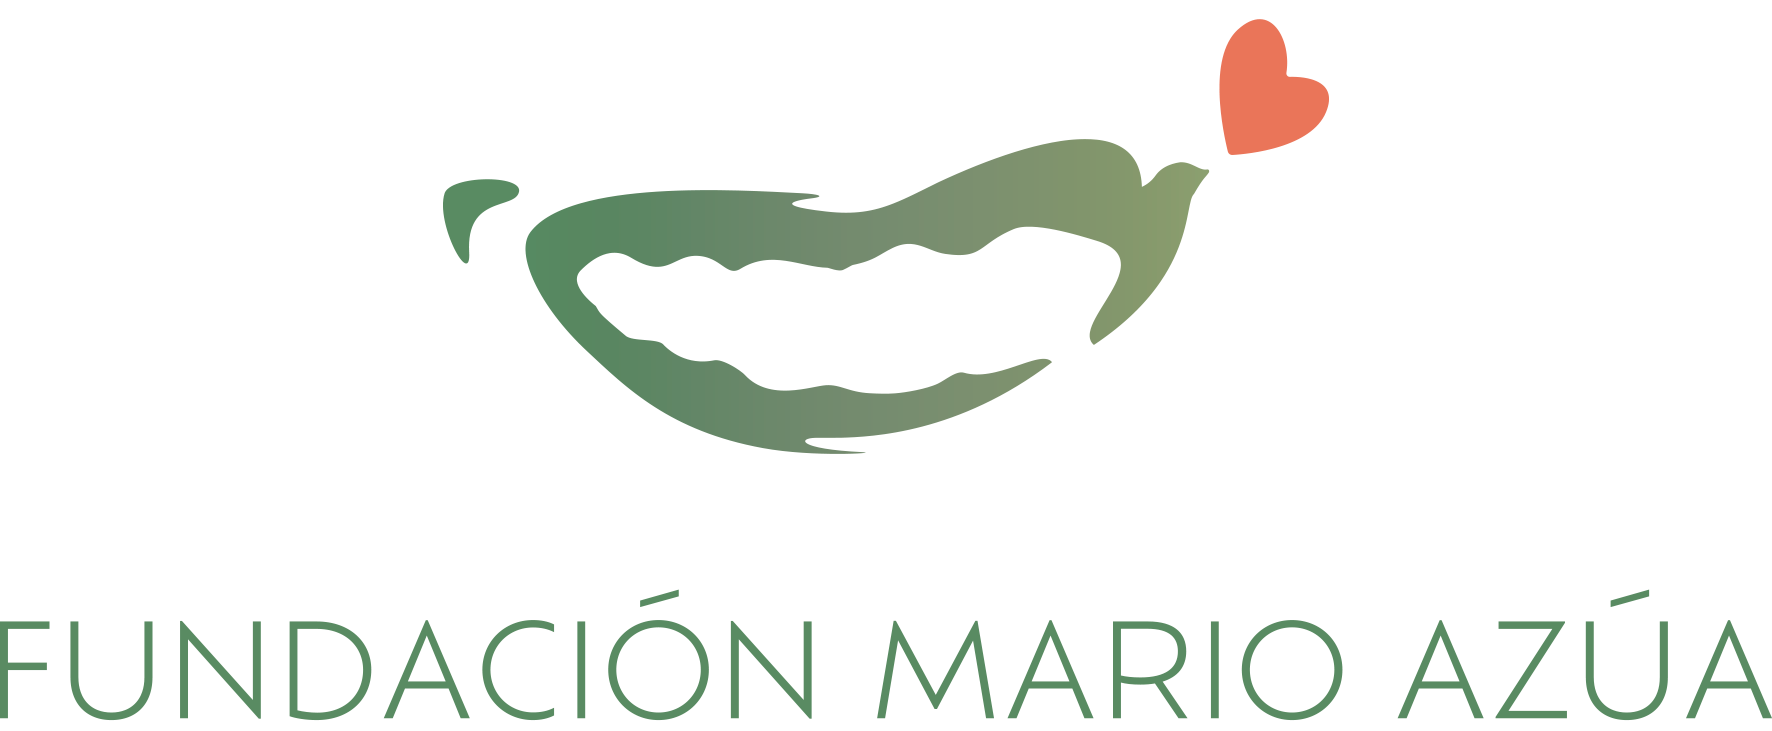 Fundación Mario Azua